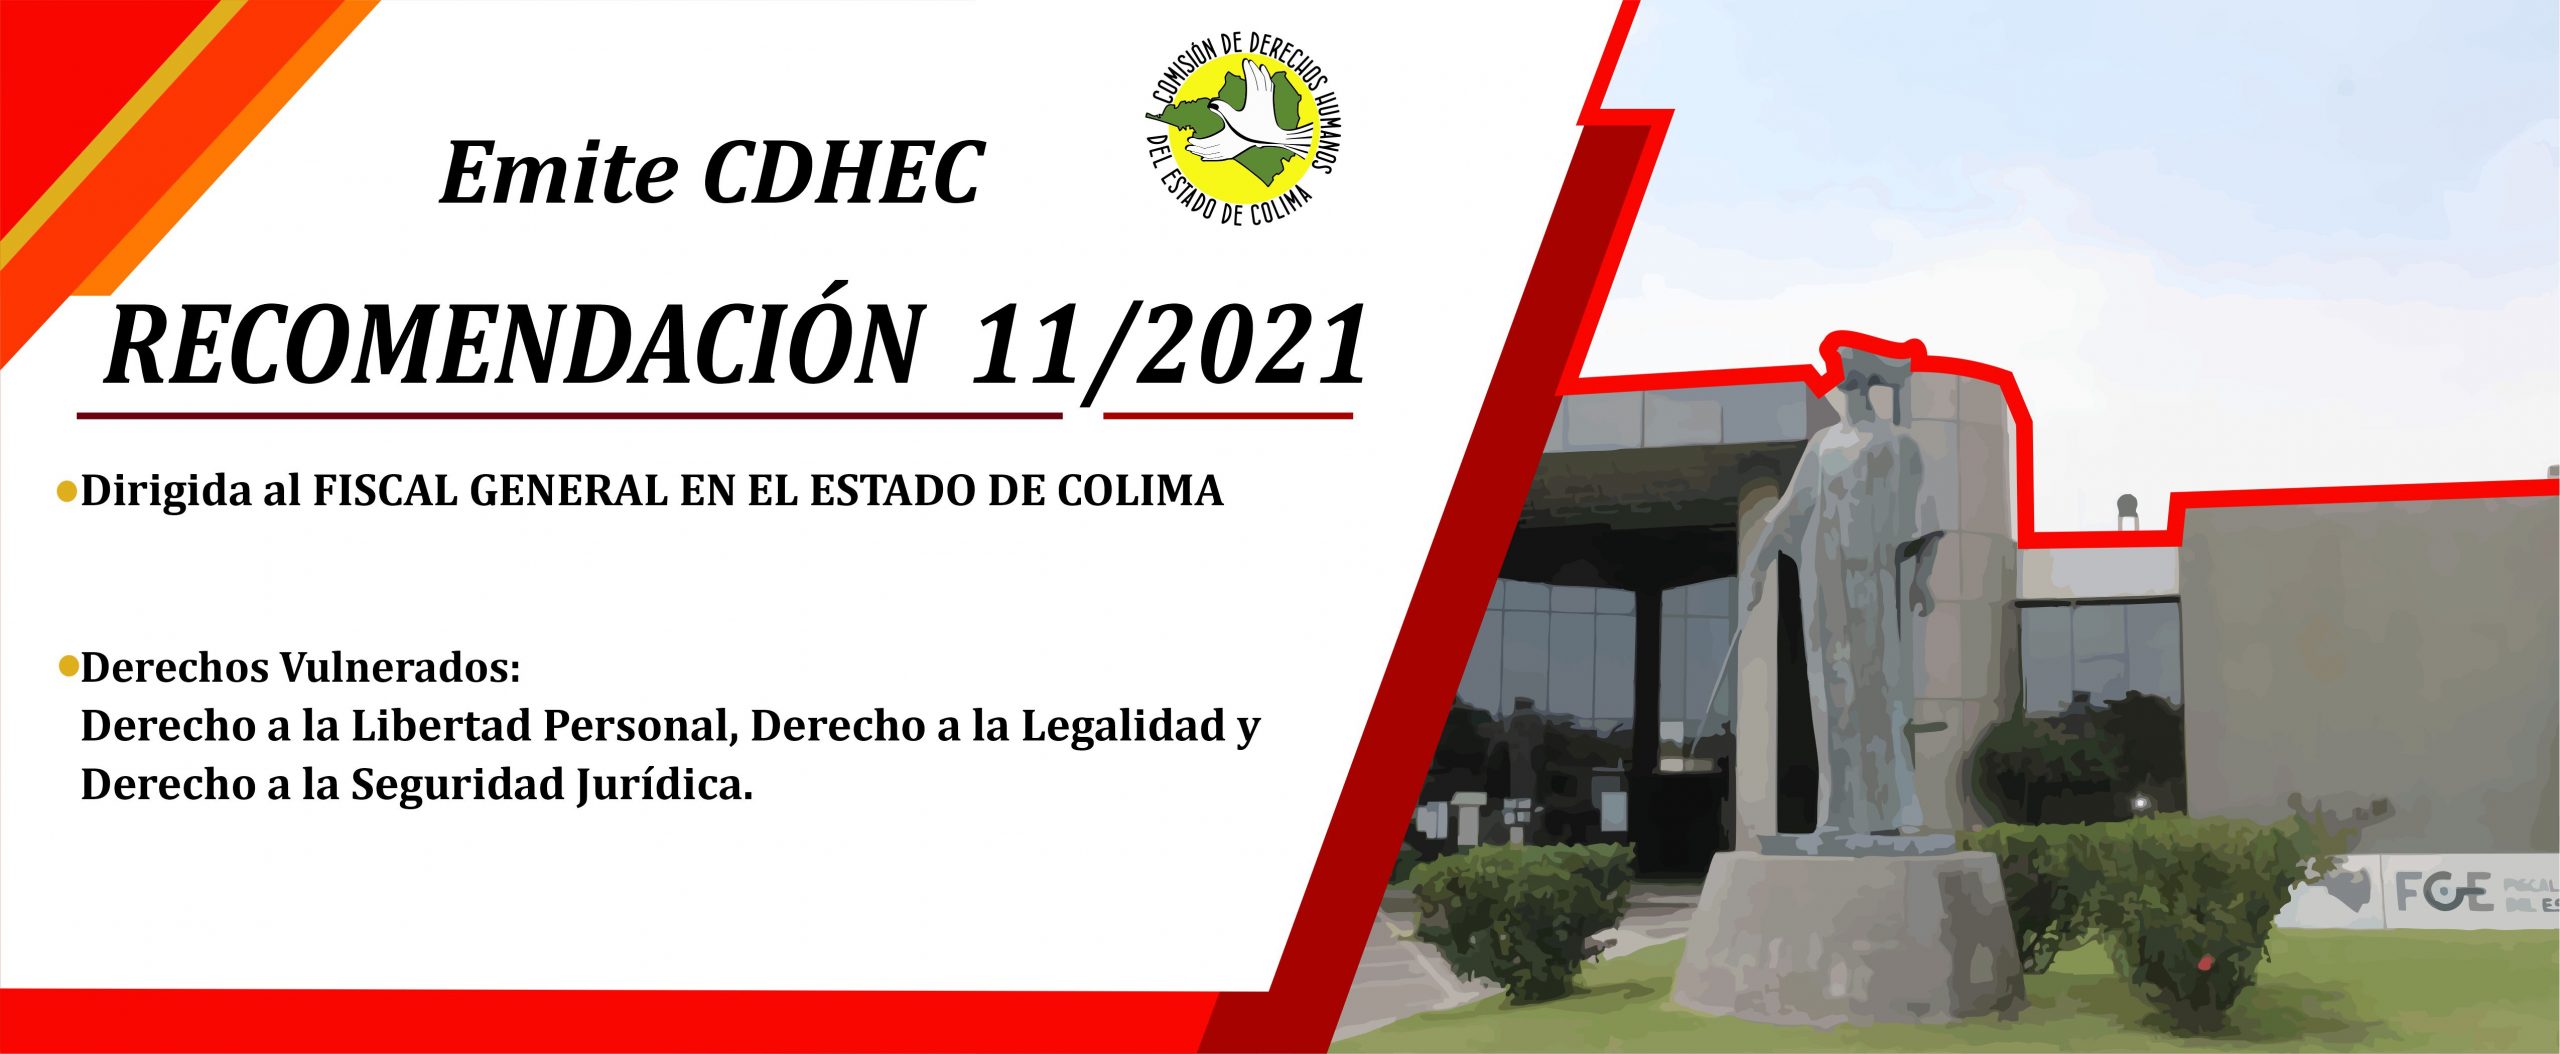 CDHEC emite Recomendación al Fiscal General en el Estado de Colima